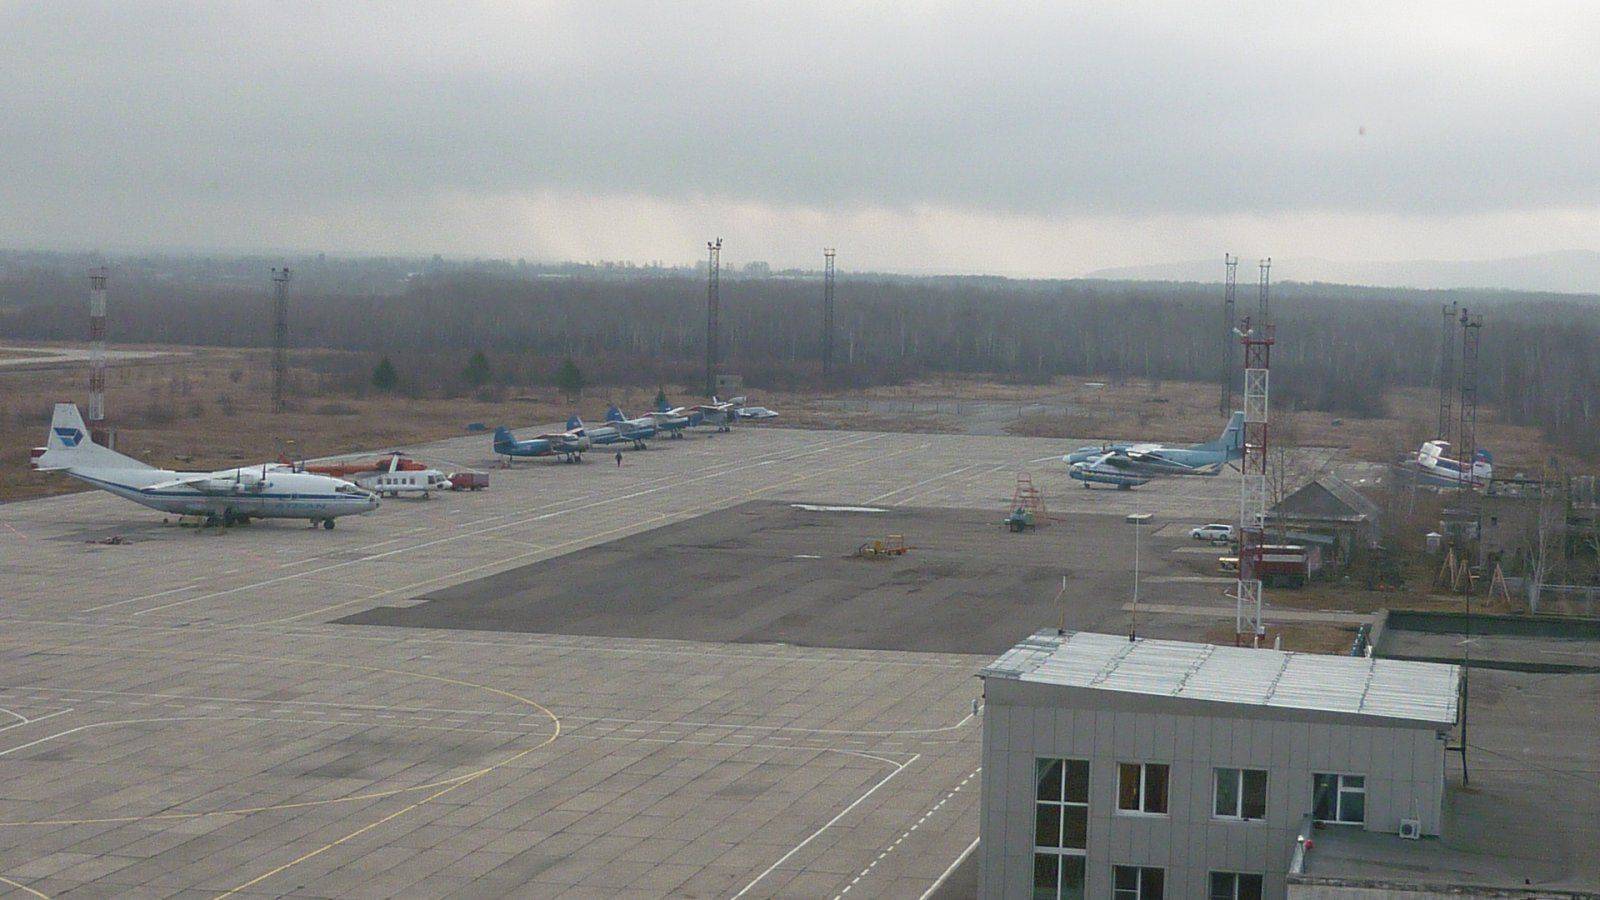 Аэропорт в комсомольске-на-амуре: контакты, инфраструктура воздушной гавани хурба, рейсы и направления полётов, парковка, и есть ли поблизости гостиницы?